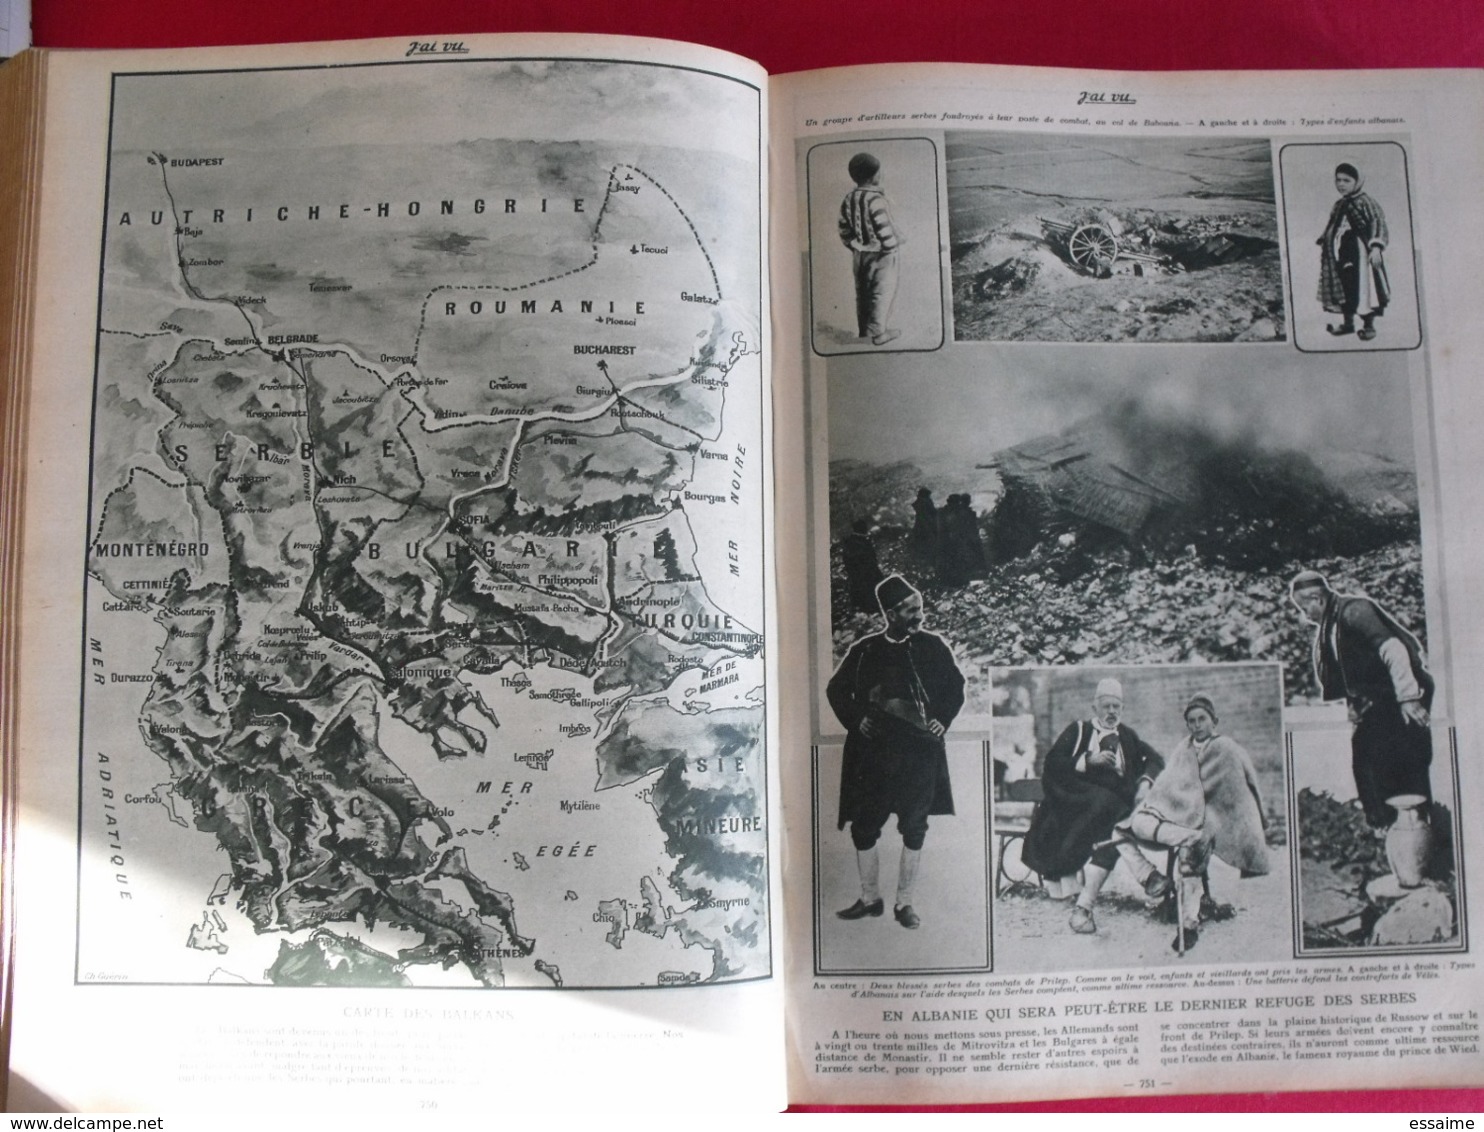 j'ai vu... 1915/16. 51 numéros. l'actualité de l'époque très illustrée pendant la guerre 14-18. recueil, reliure.